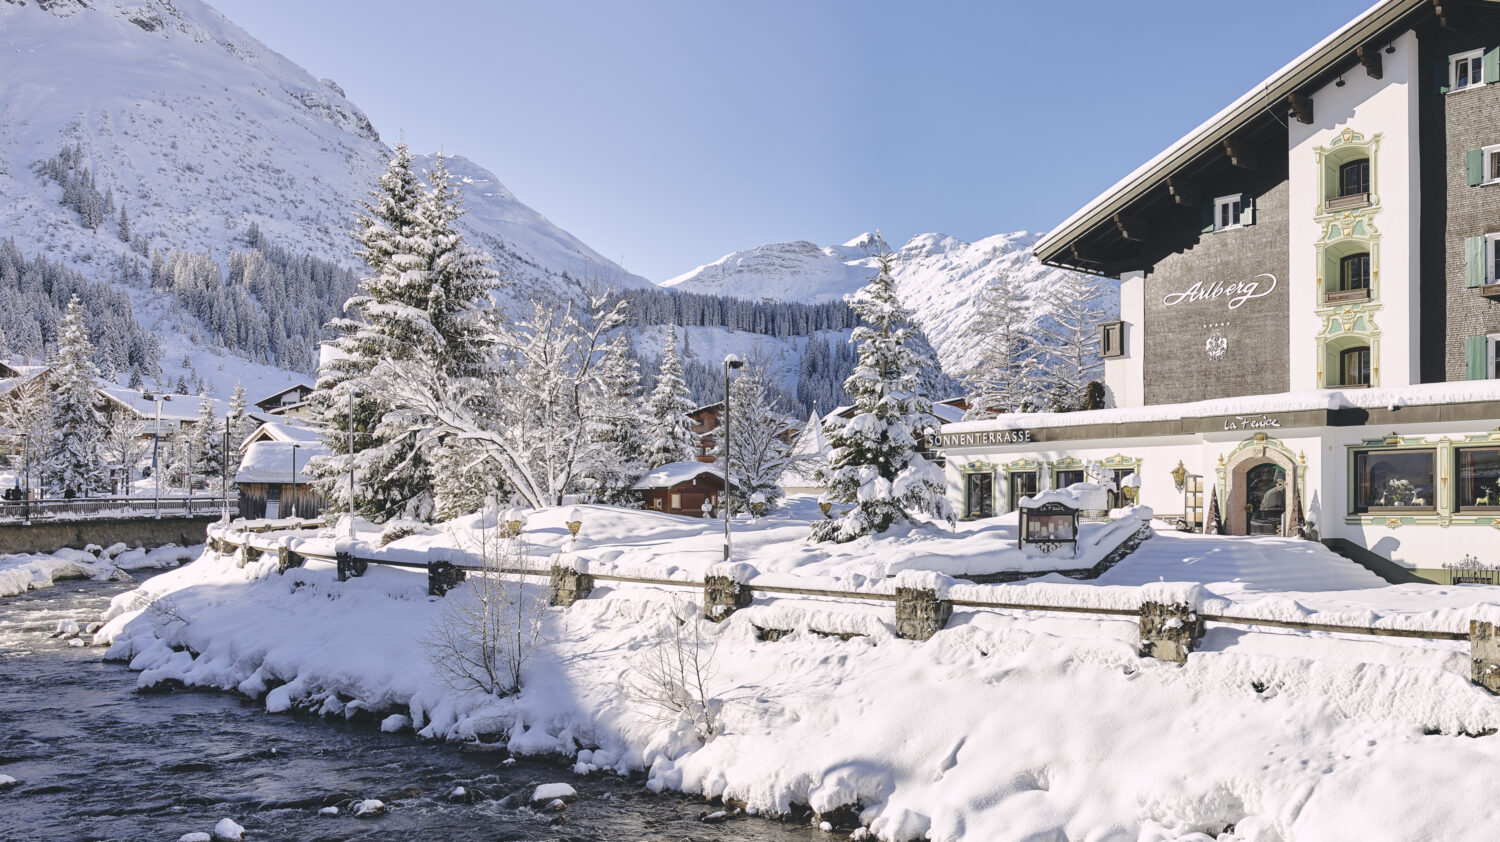 hotel-arlberg-snow-outside-alexkaiser-3